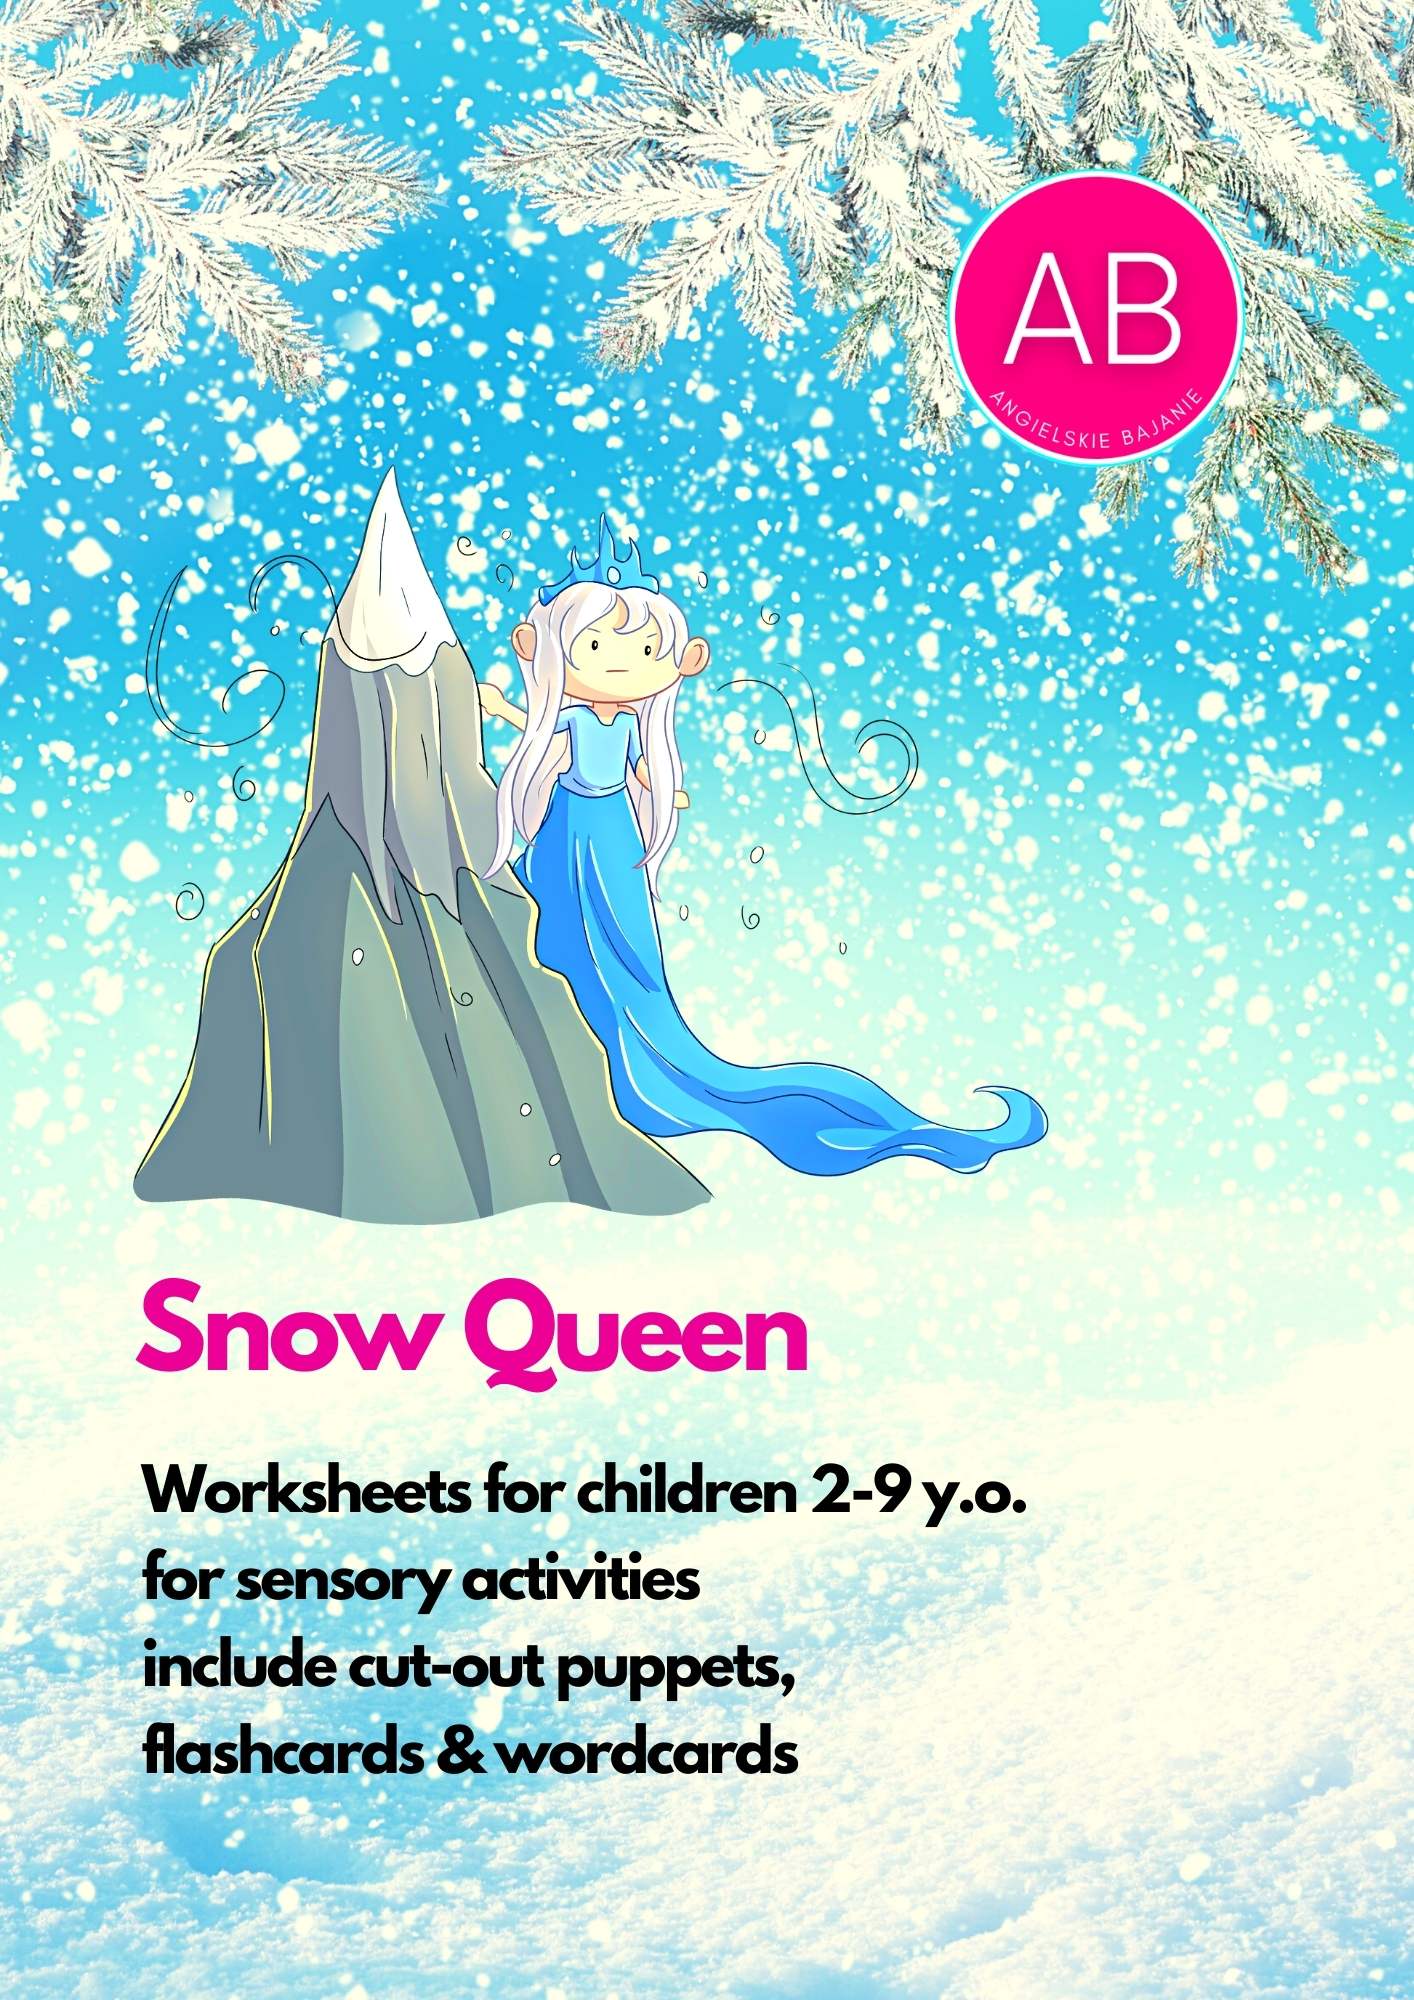 Snow Queen worksheets